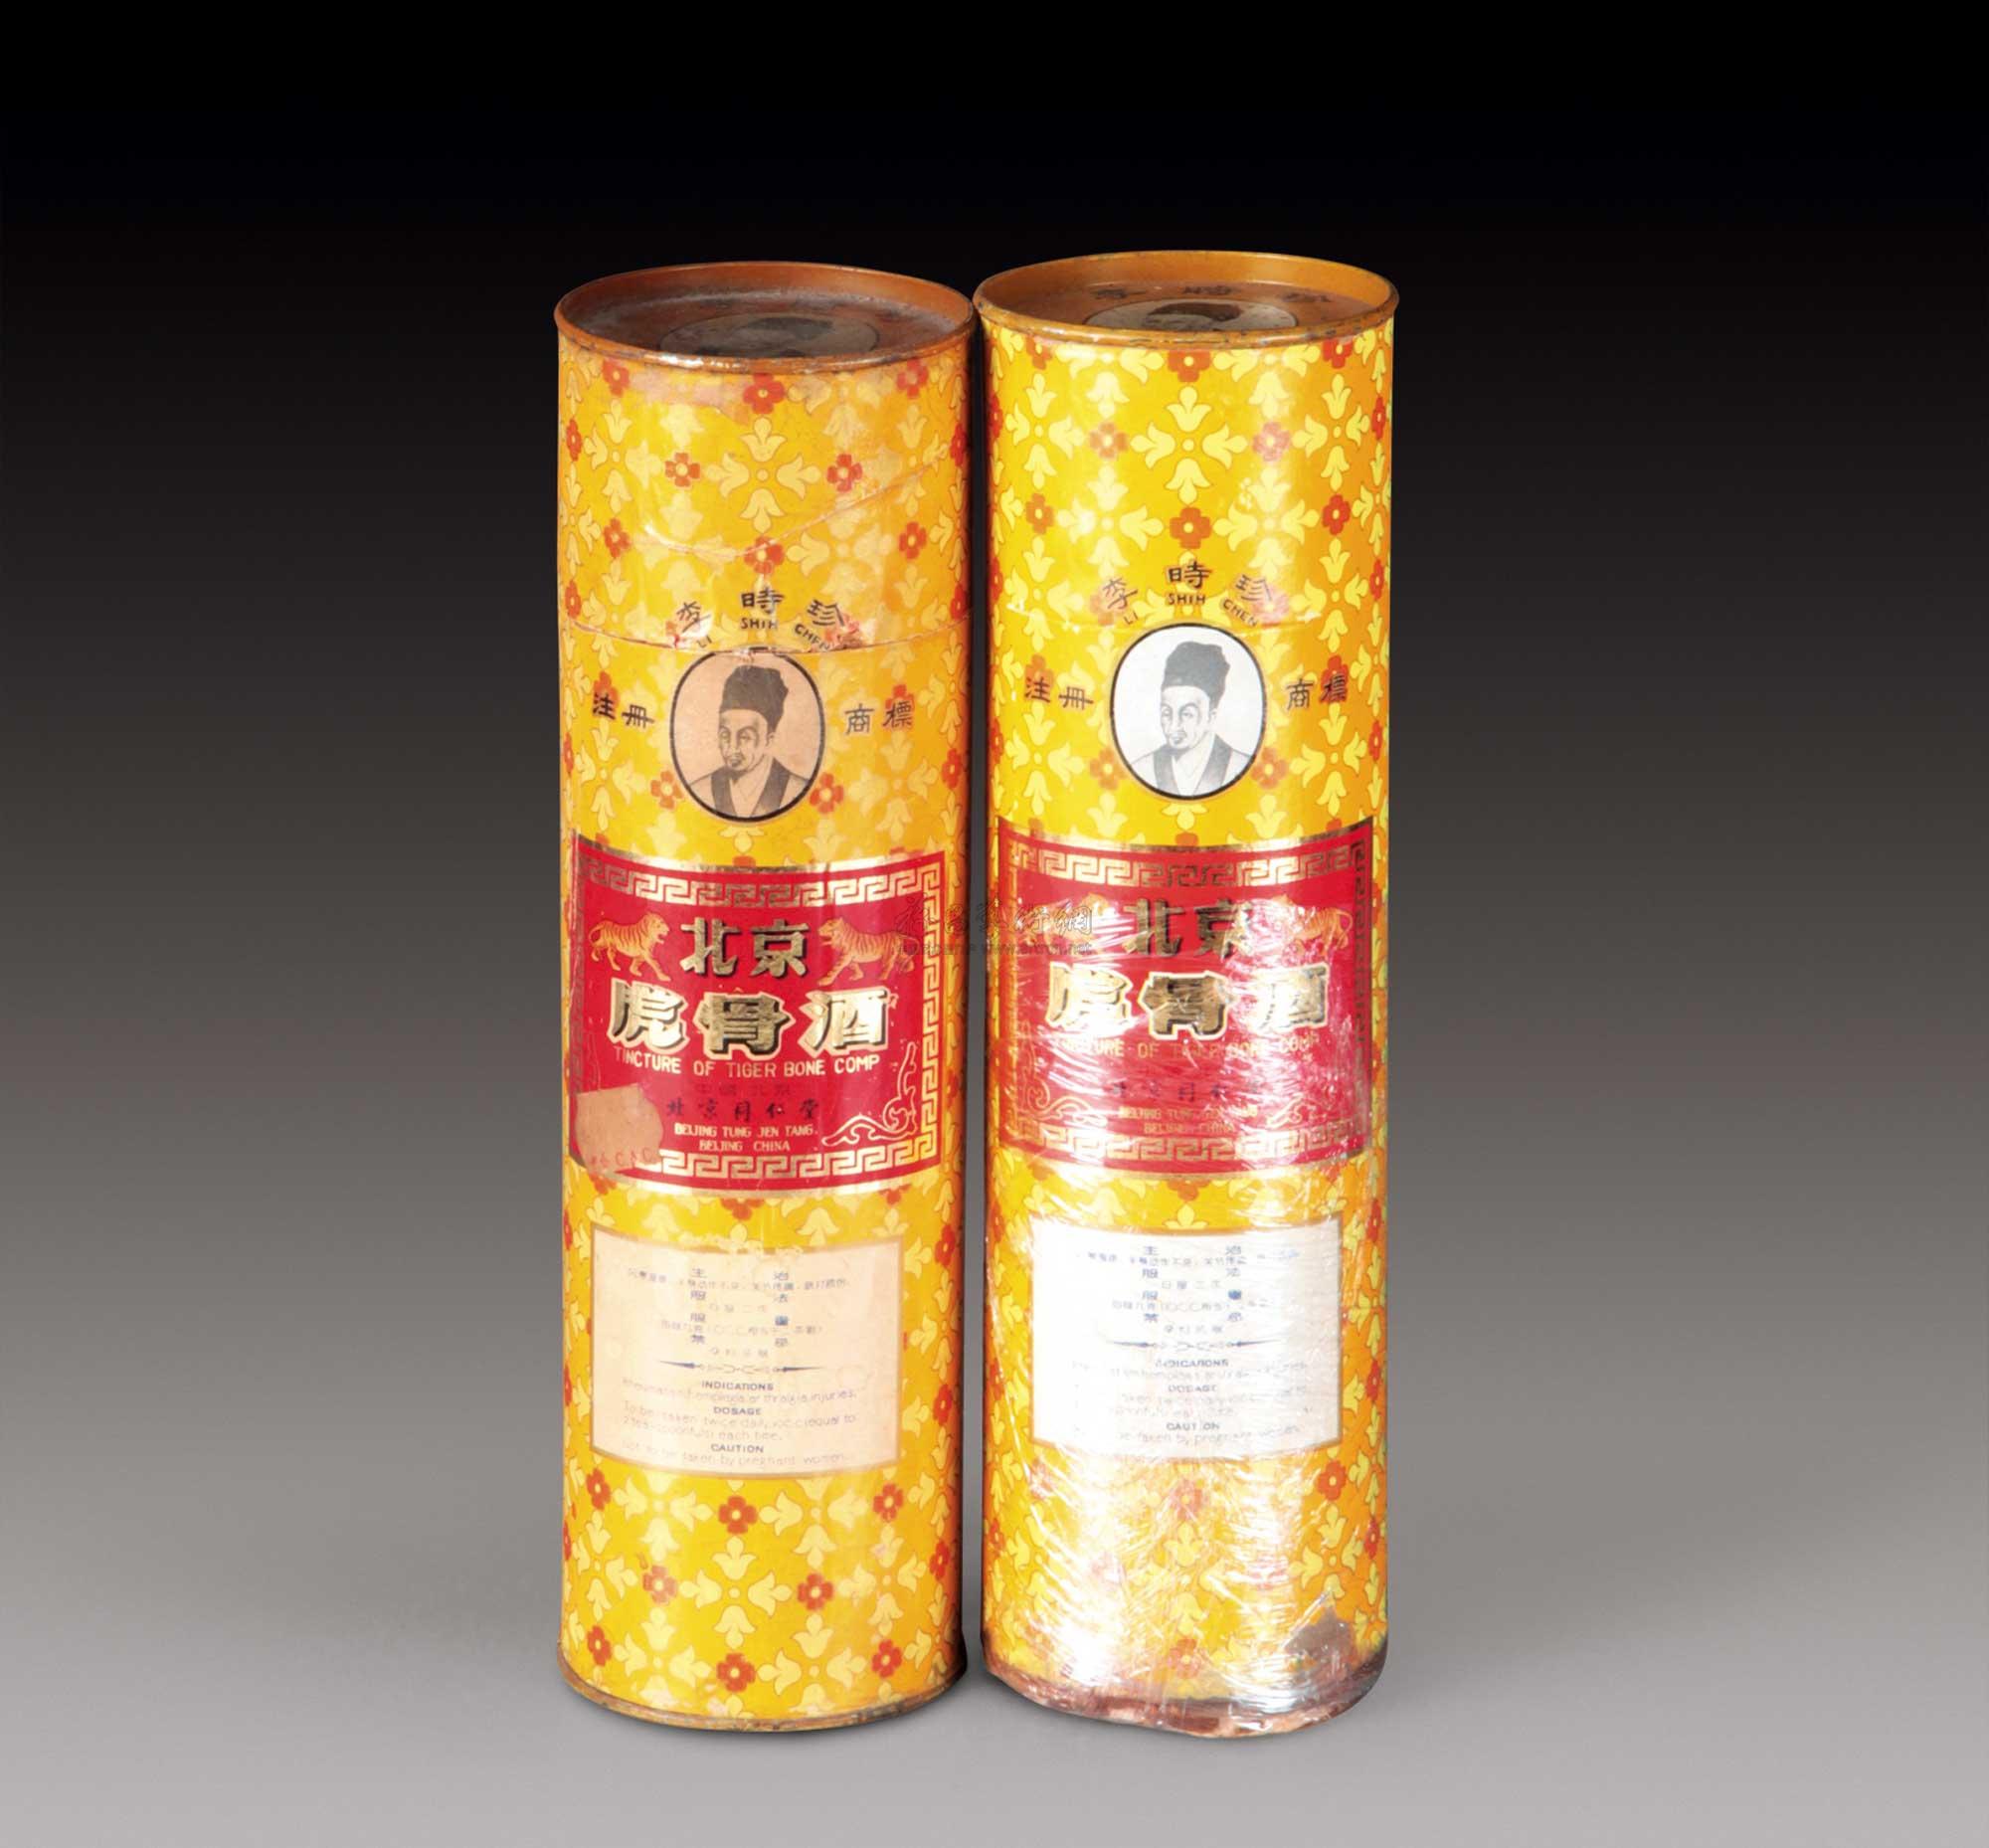 3188 1980年代北京同仁堂出口装李时珍牌虎骨酒两瓶